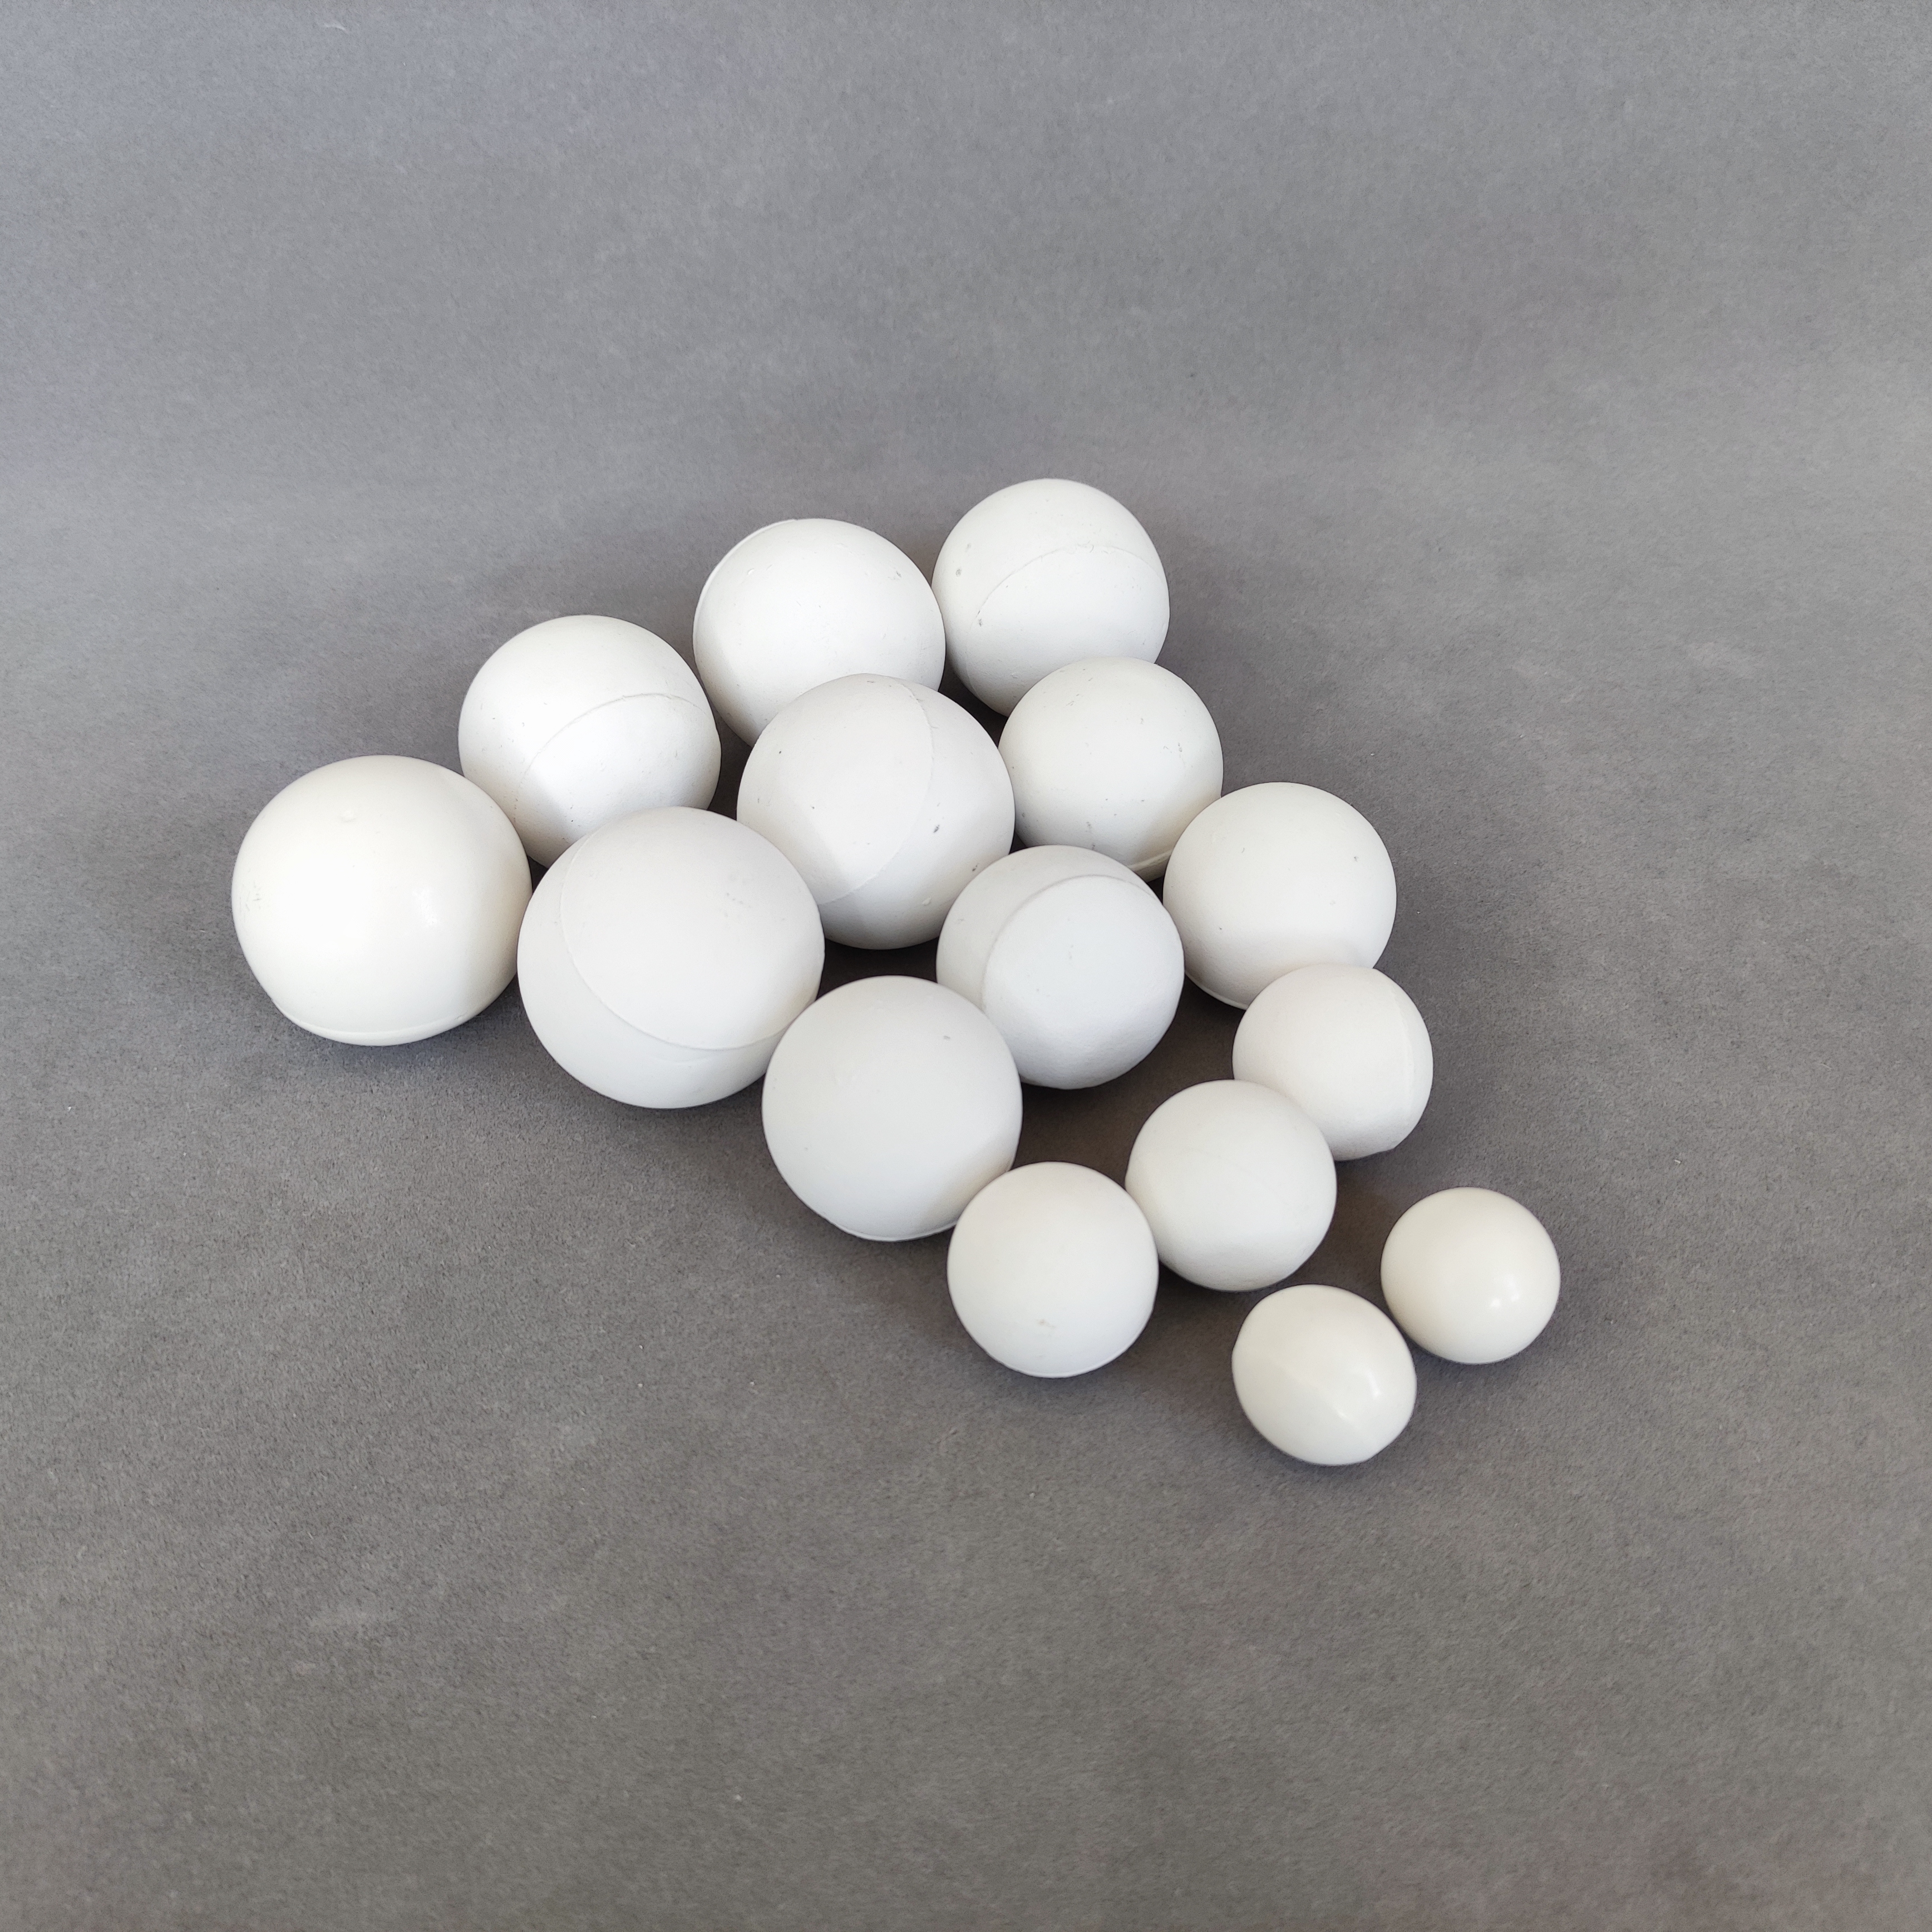 Alumina Ceramic Balls for Dry Grinding